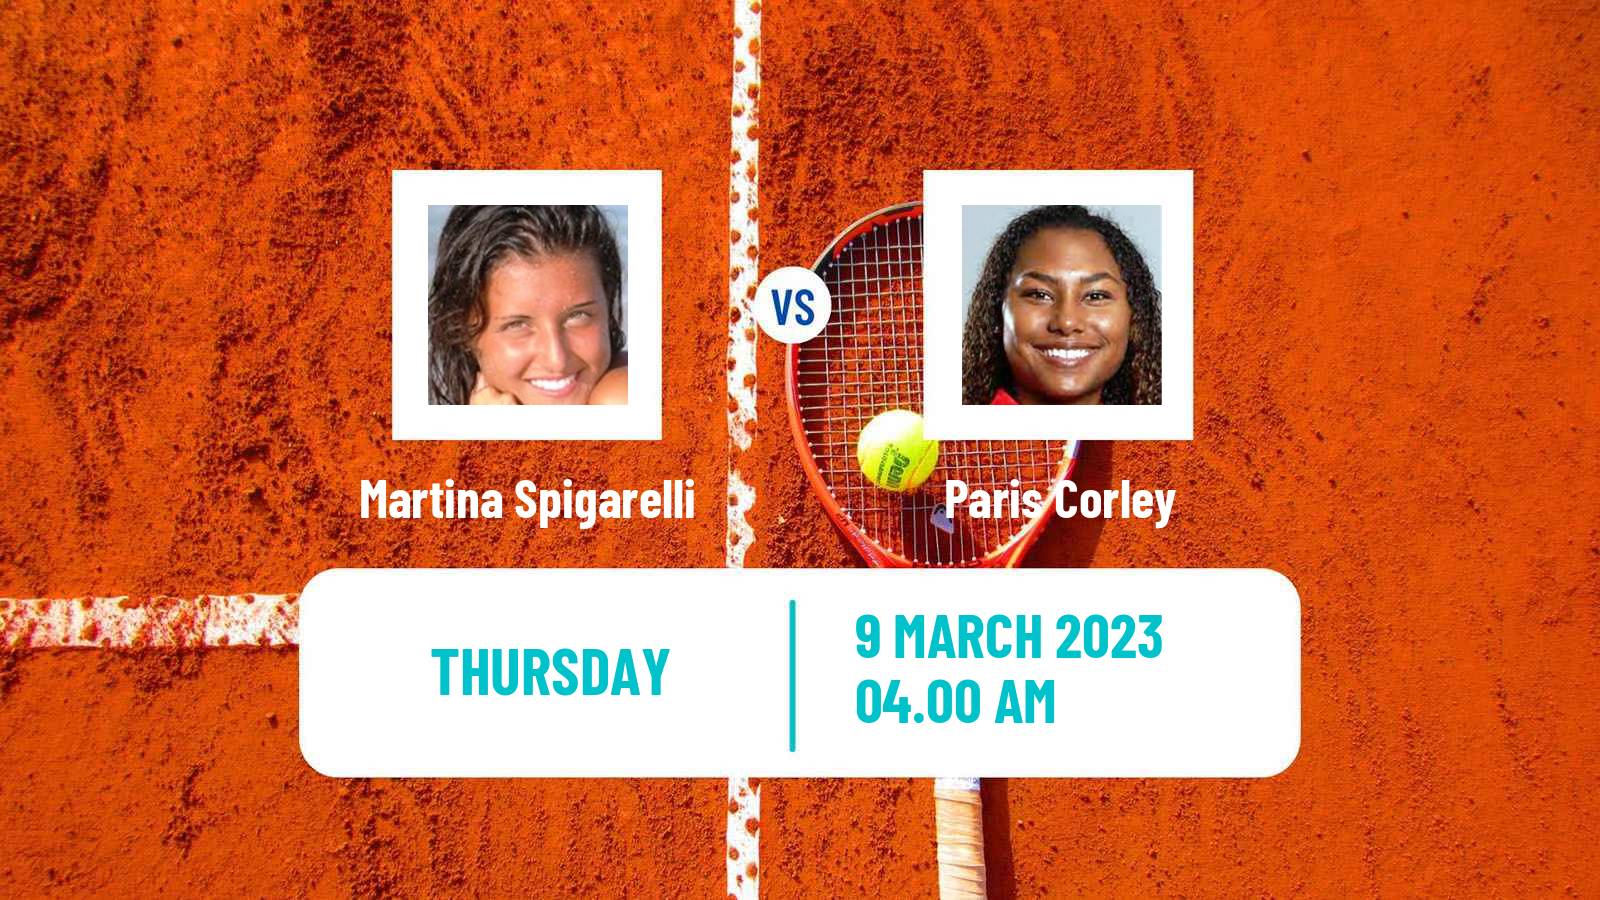 Tennis ITF Tournaments Martina Spigarelli - Paris Corley